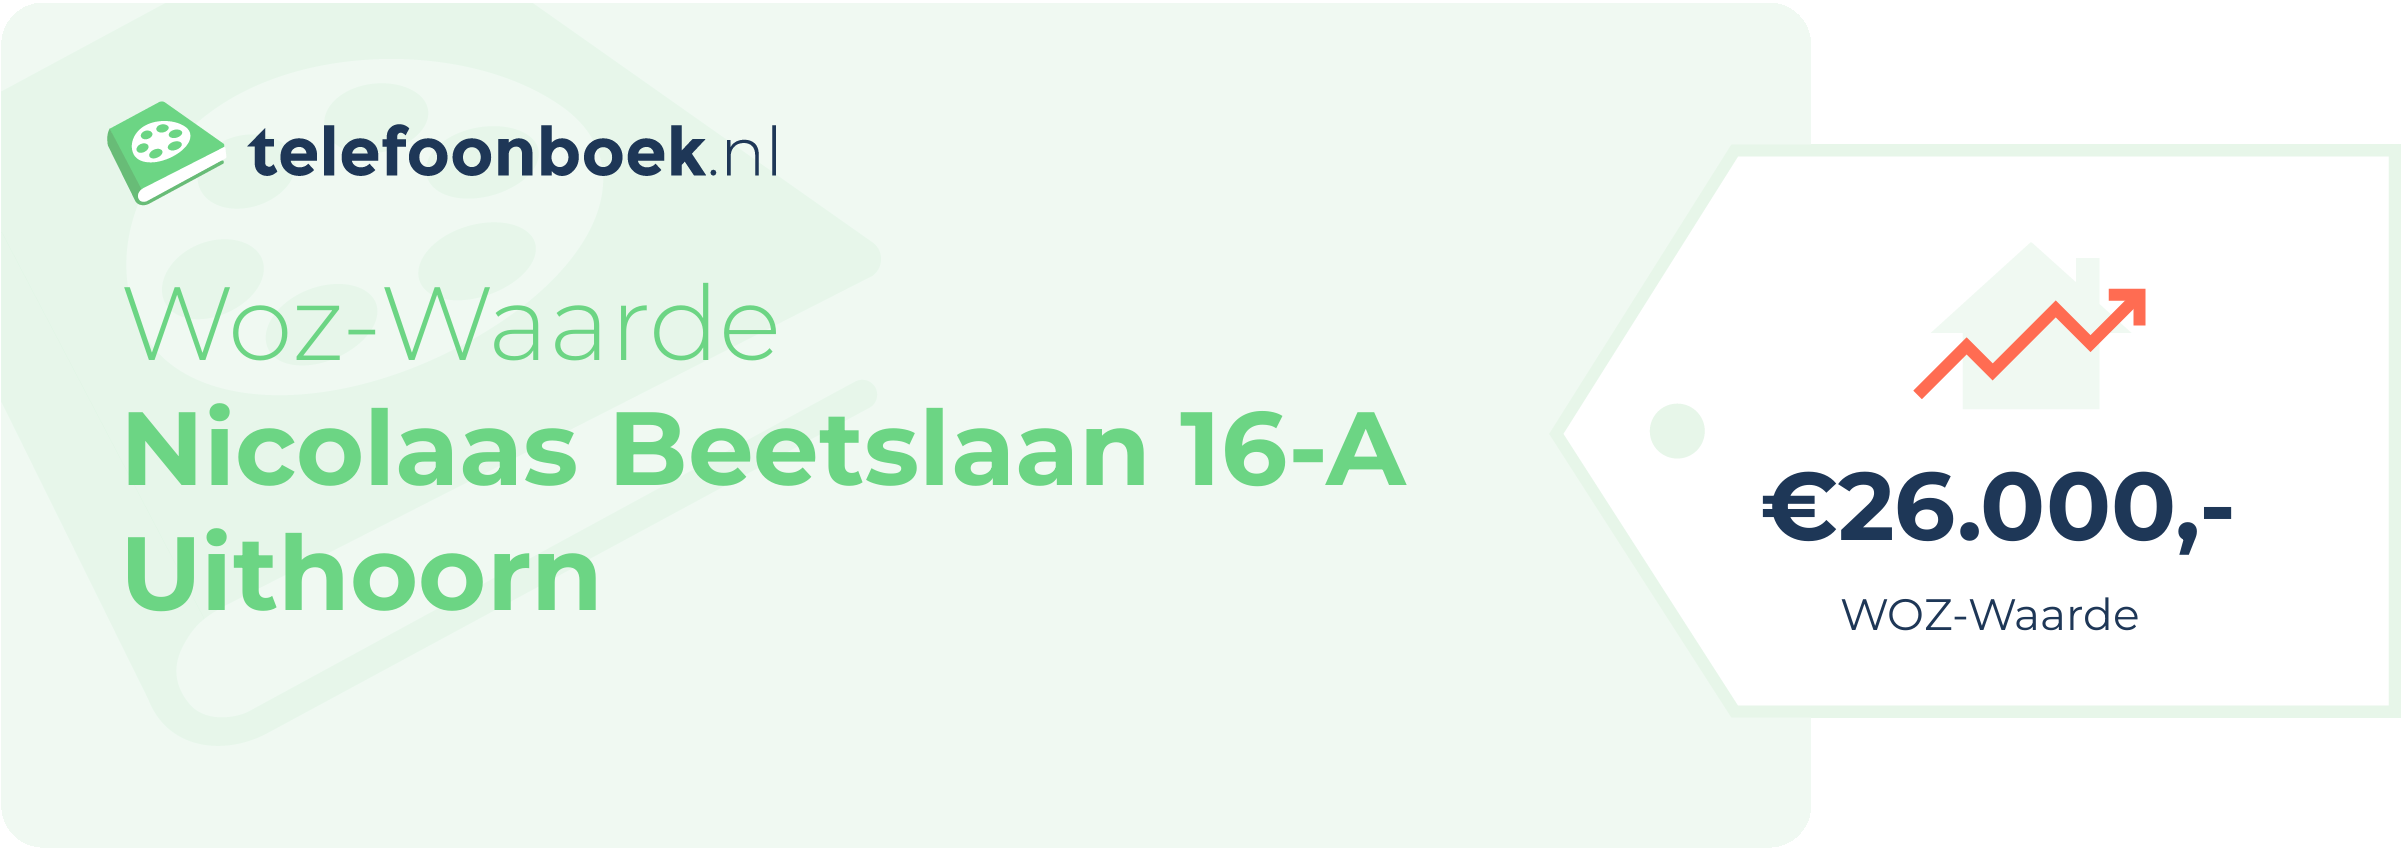 WOZ-waarde Nicolaas Beetslaan 16-A Uithoorn